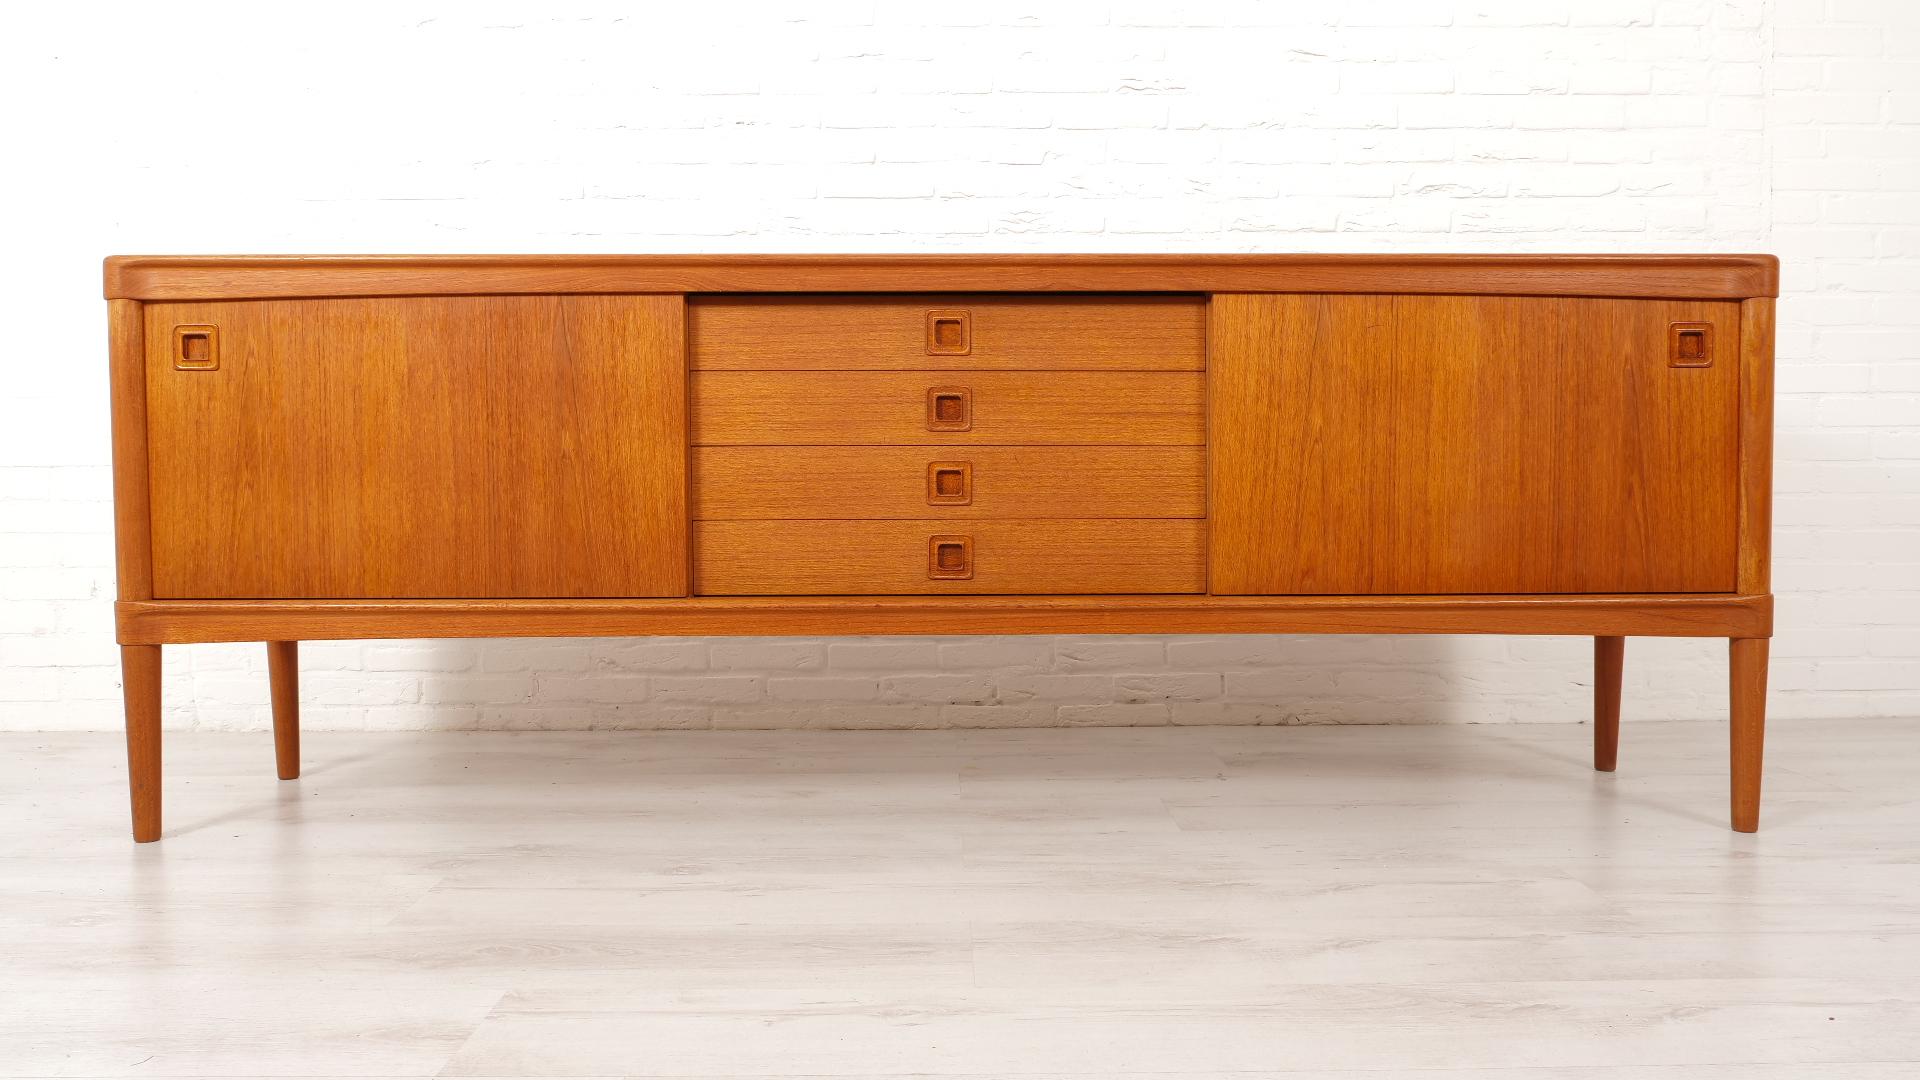 Magnifique cabinet vintage conçu pour H.W. Klein pour Bramin Danemark dans les années 1960. Ce buffet vintage a une belle couleur de bois et est d'une qualité super solide et en bon état. L'armoire présente de légères traces d'utilisation.

Période